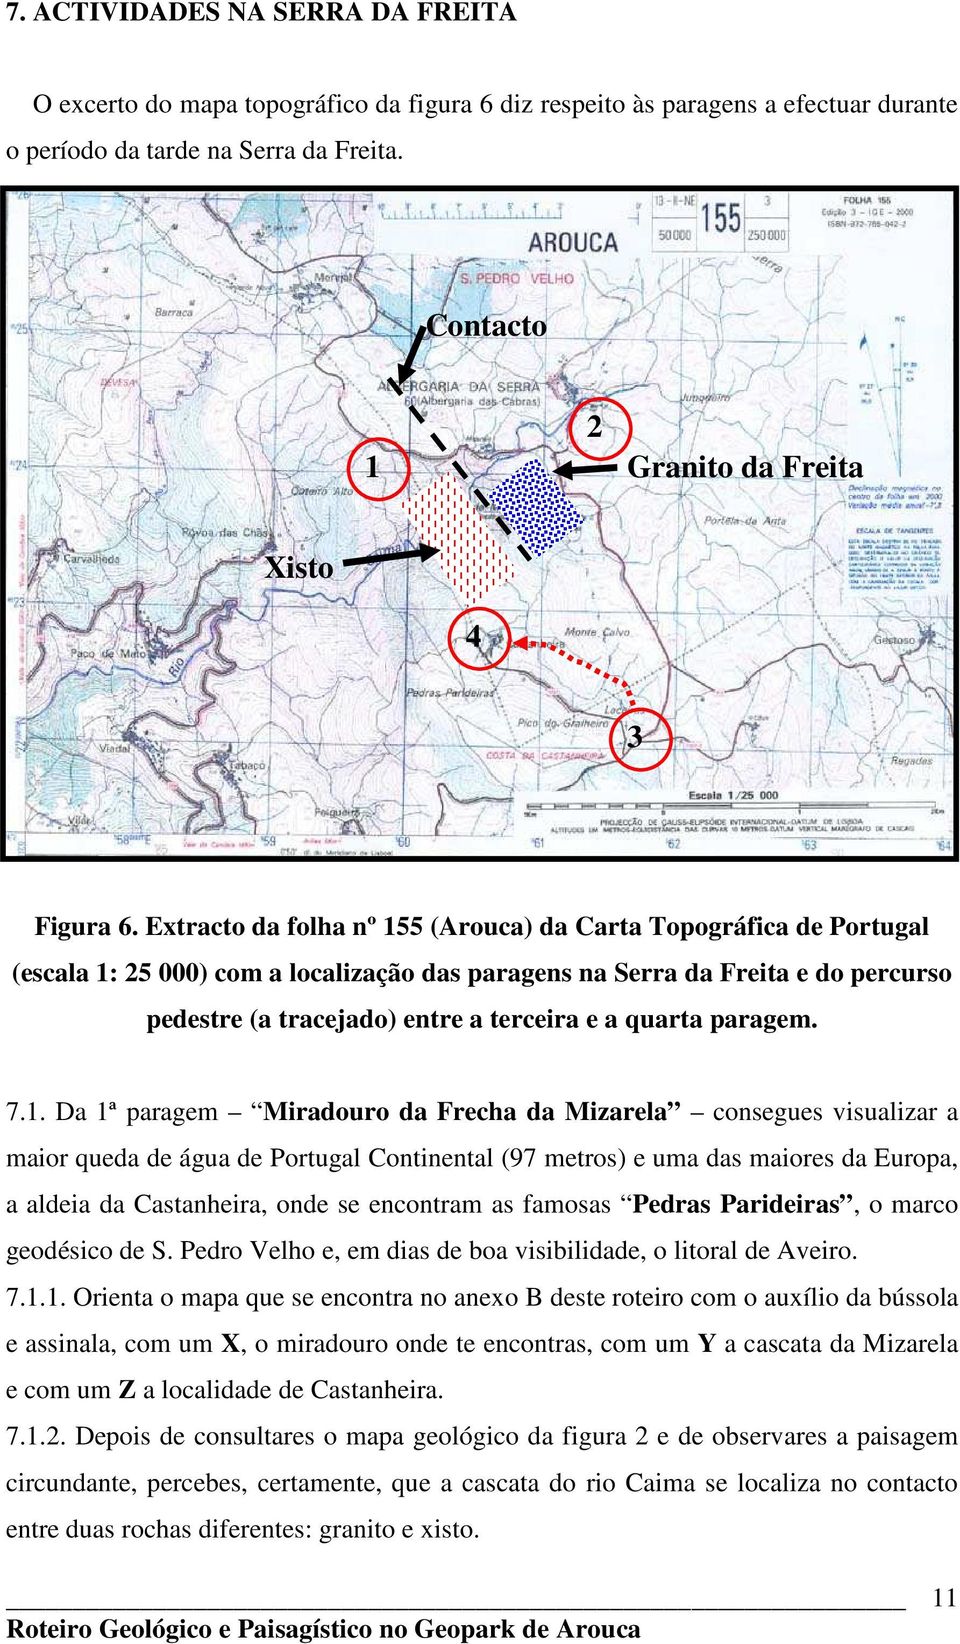 Extracto da folha nº 155 (Arouca) da Carta Topográfica de Portugal (escala 1: 25 000) com a localização das paragens na Serra da Freita e do percurso pedestre (a tracejado) entre a terceira e a